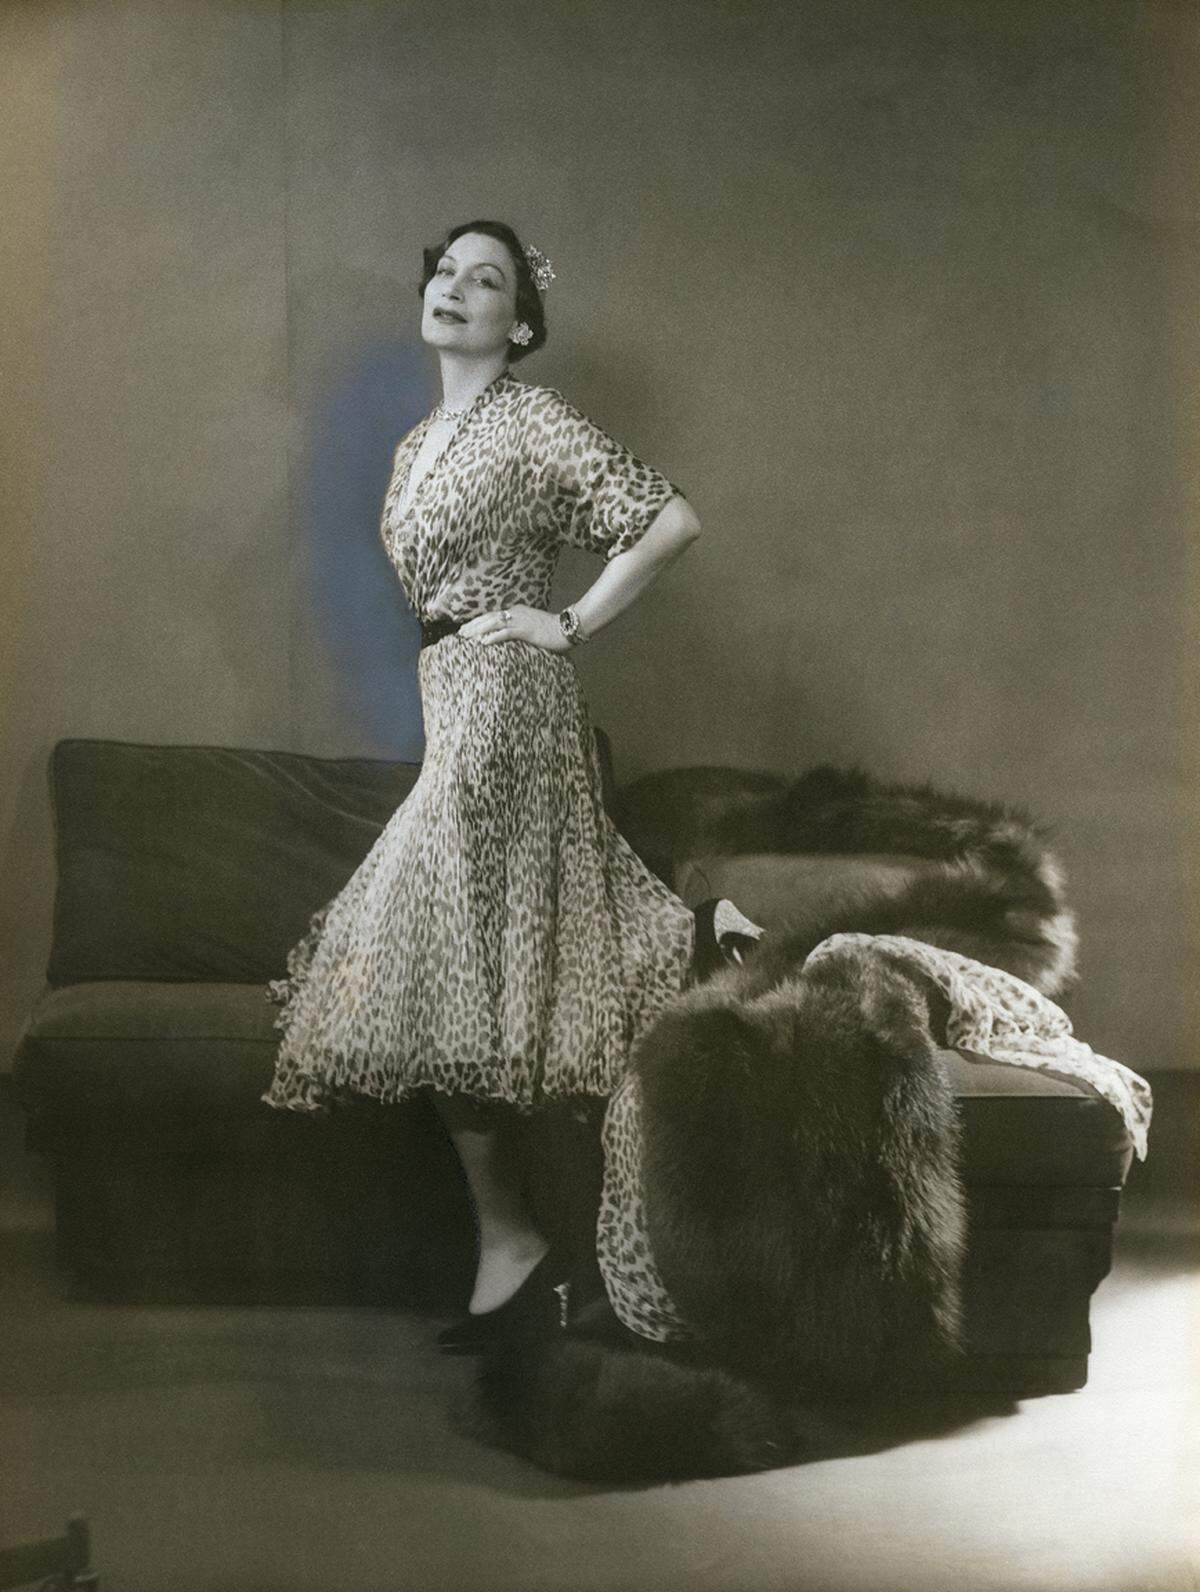 "Mizza Bricard ist eine dieser heute so seltenen Personen, deren einziger Lebensinhalt die Eleganz ist", sagte Christian Dior über seine Kundin. Porträt von Mitzah Bricard, eta 1950.